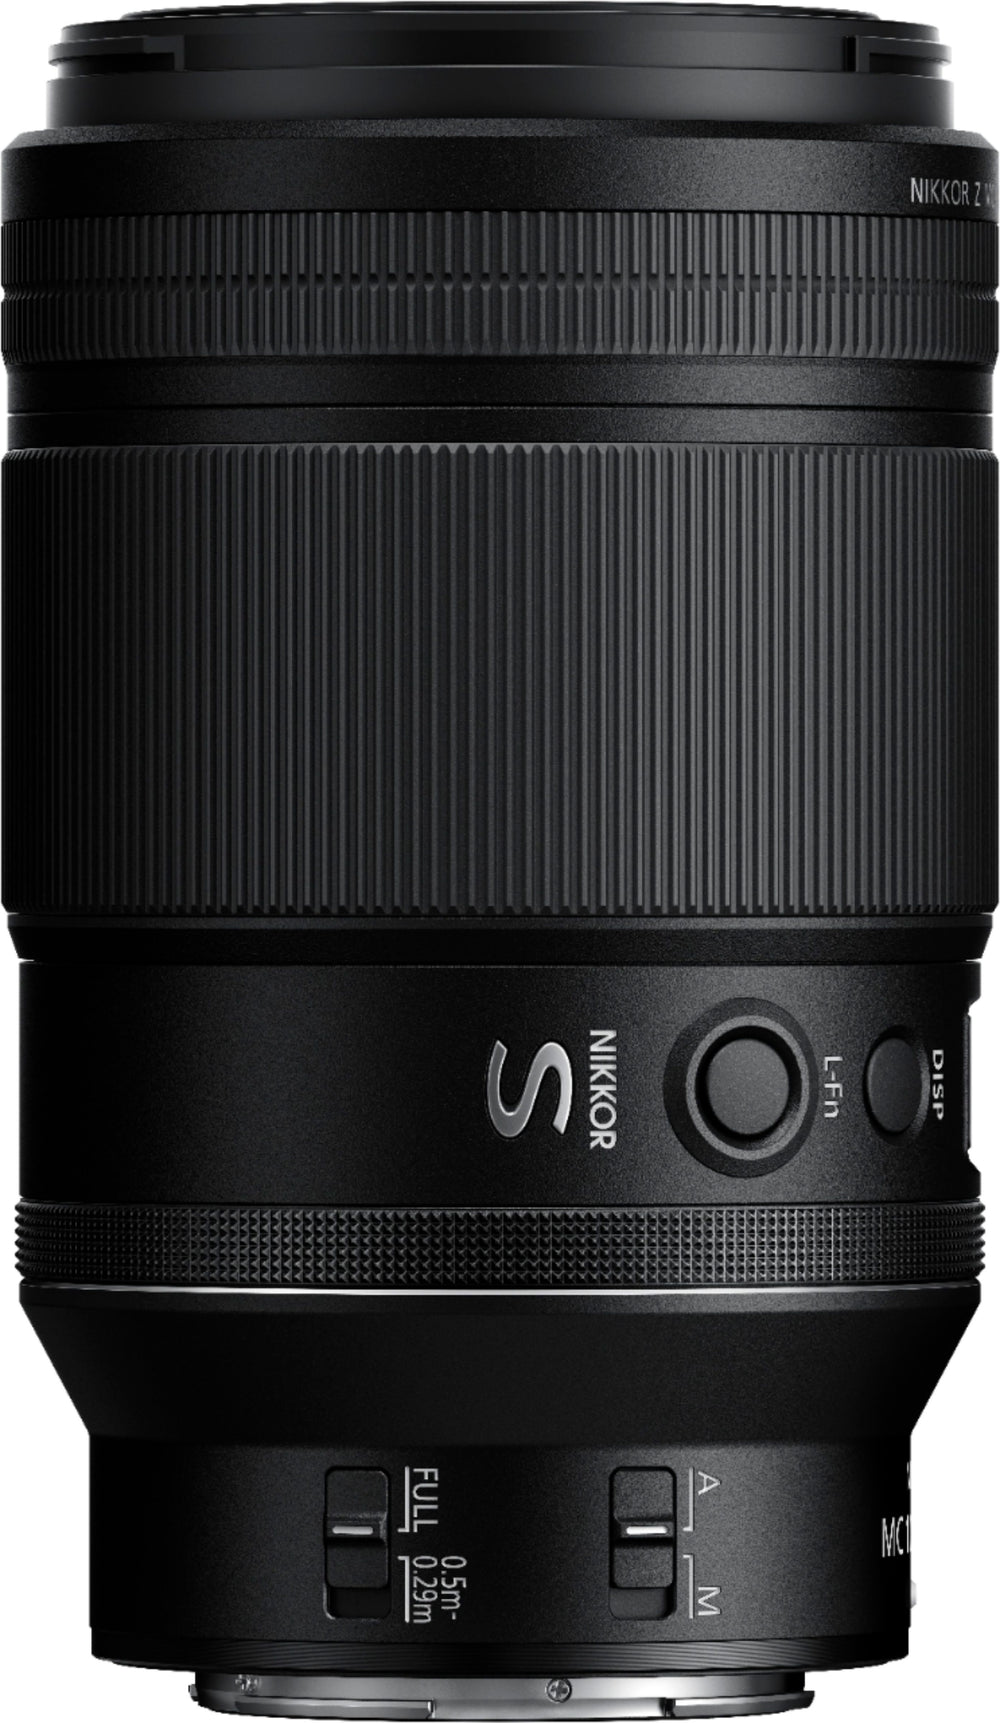 Nikon - NIKKOR Z MC 105mm f/2.8 VR S Macro Lens for Z Series Mirrorless Cameras_1